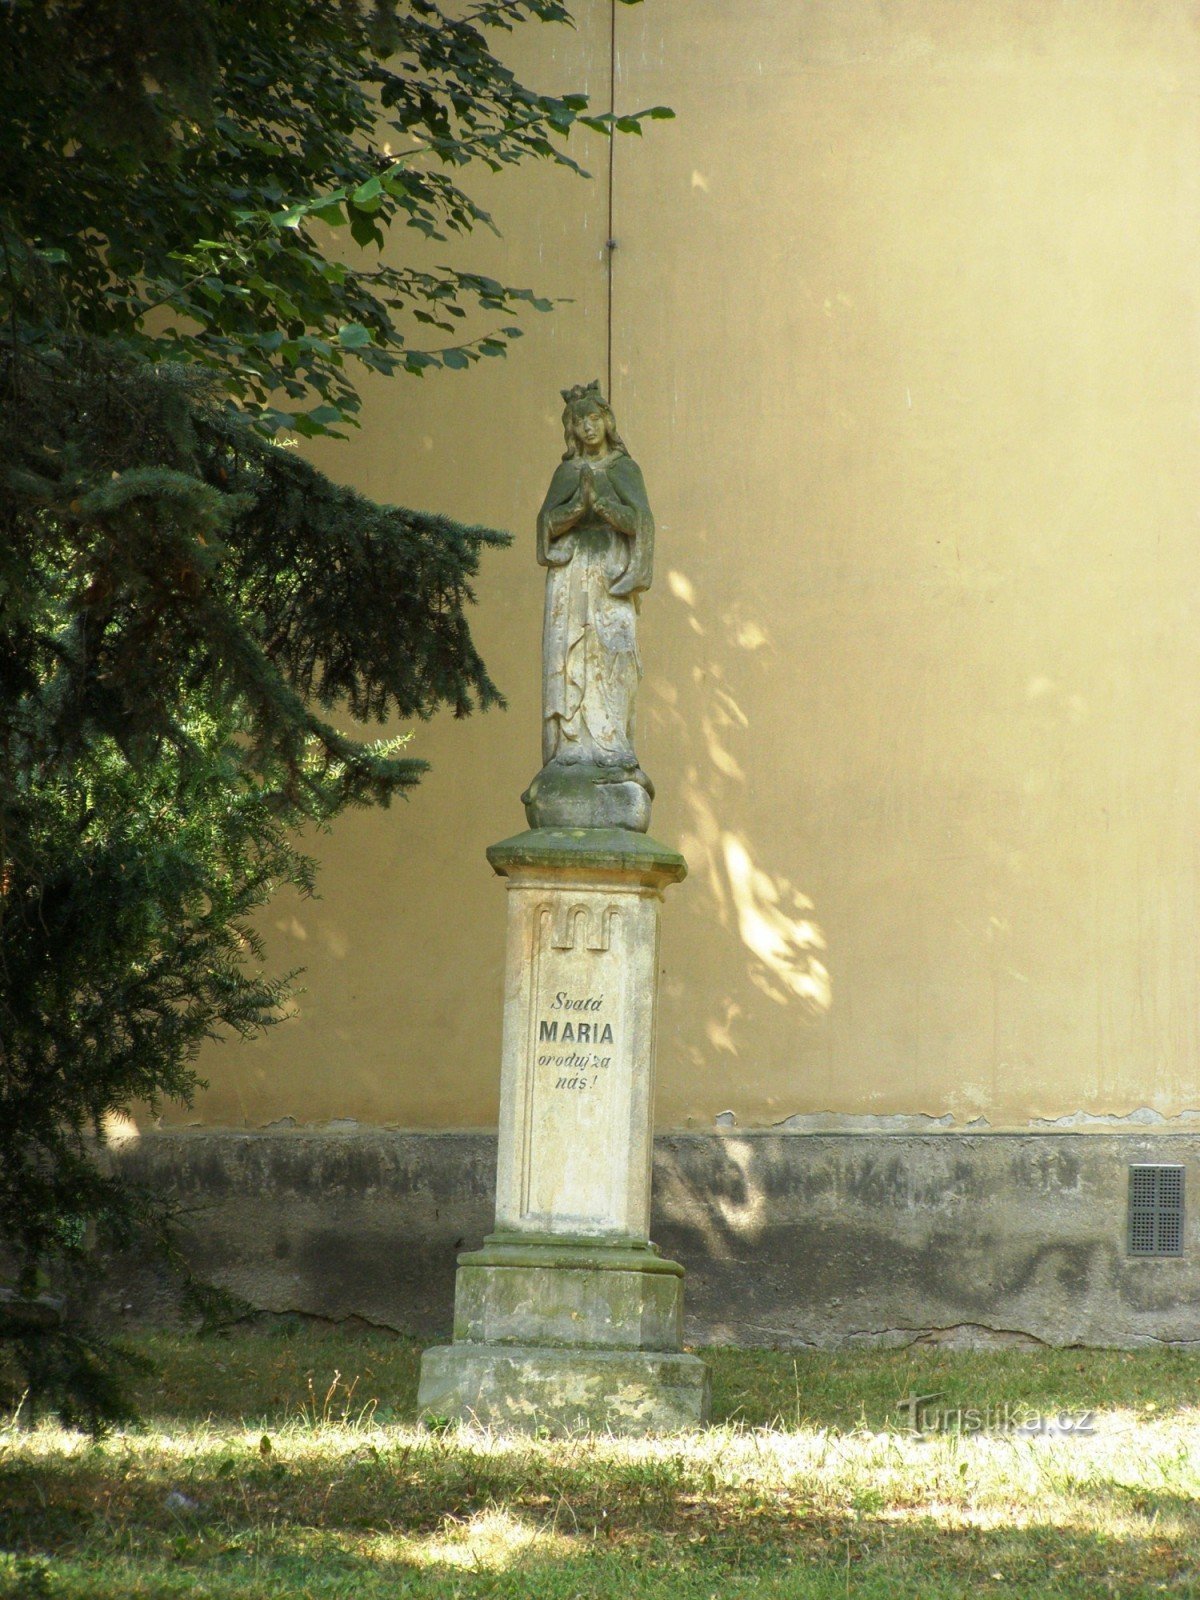 Štězery - 圣彼得教堂标记